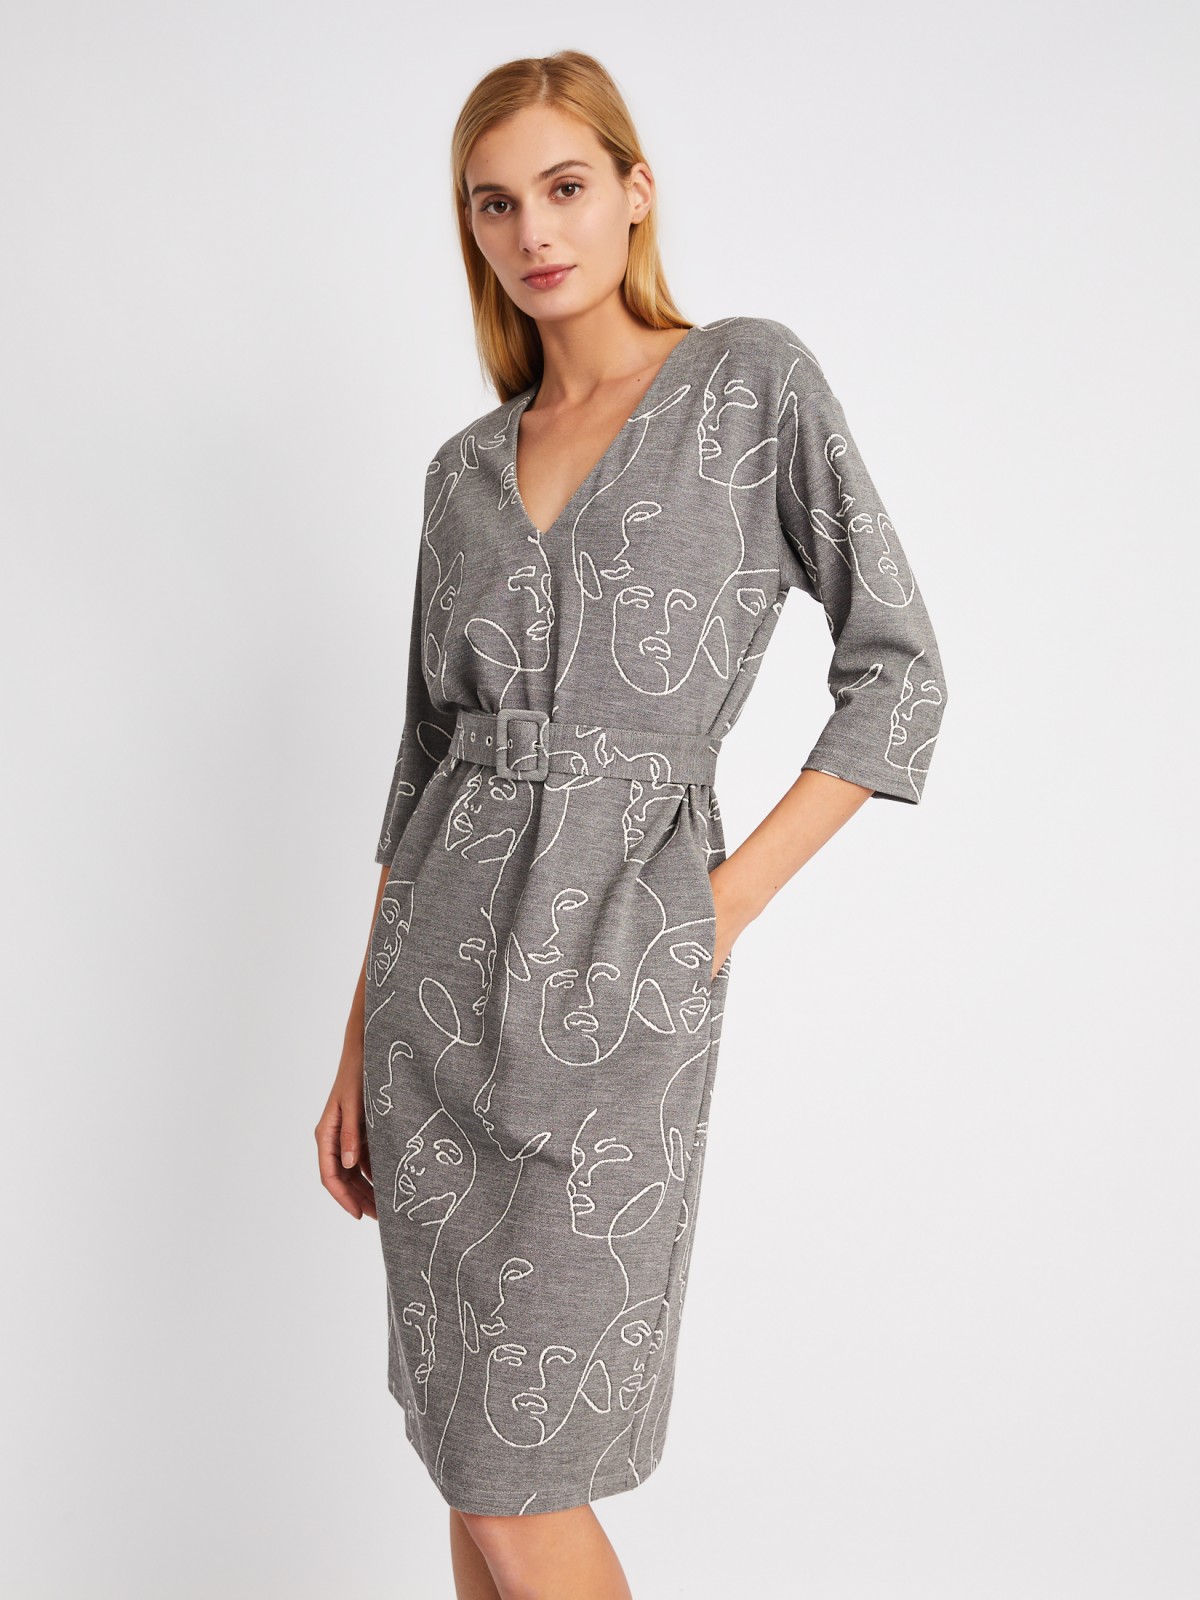 Платье с укороченным рукавом и ремнём на талии zolla 024118139371, цвет серый, размер S - фото 1